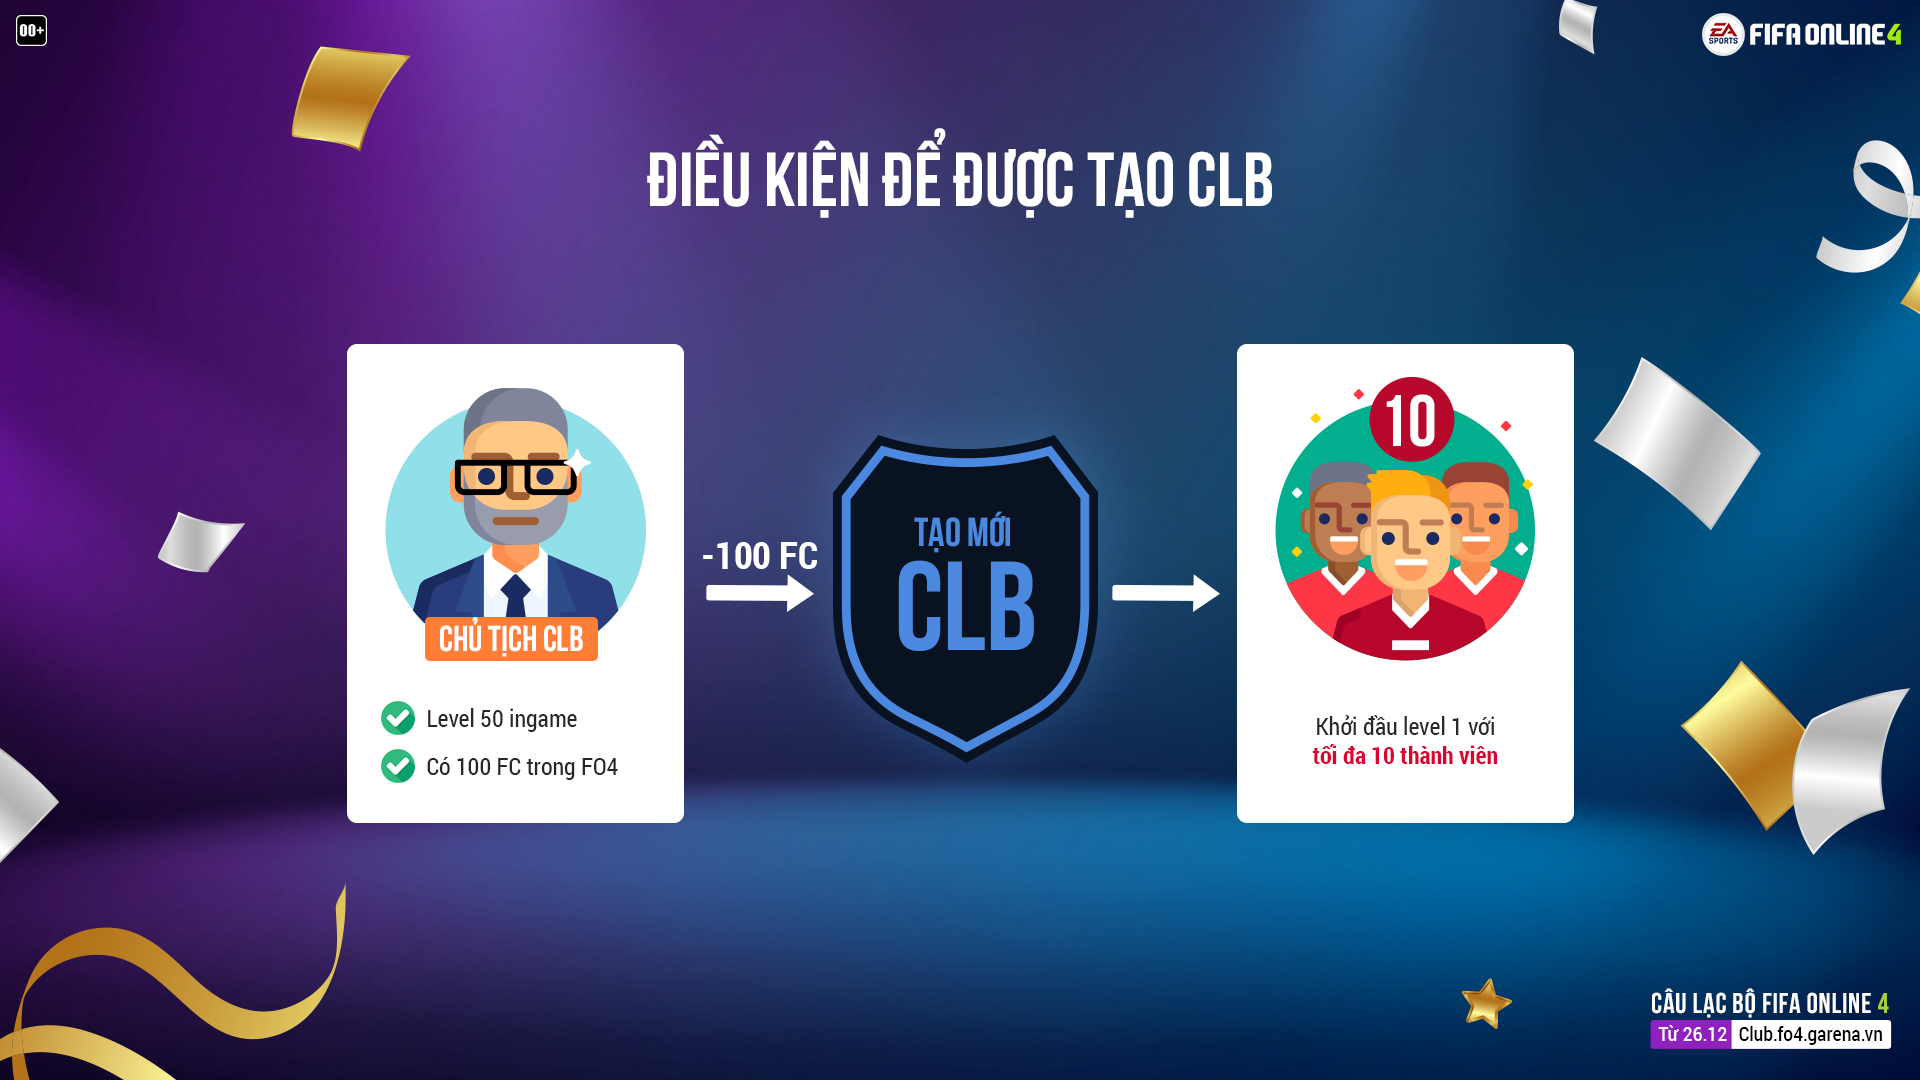 FO4, Club, 1 vs 1, Việt Nam, FIFA Online, siêu sao